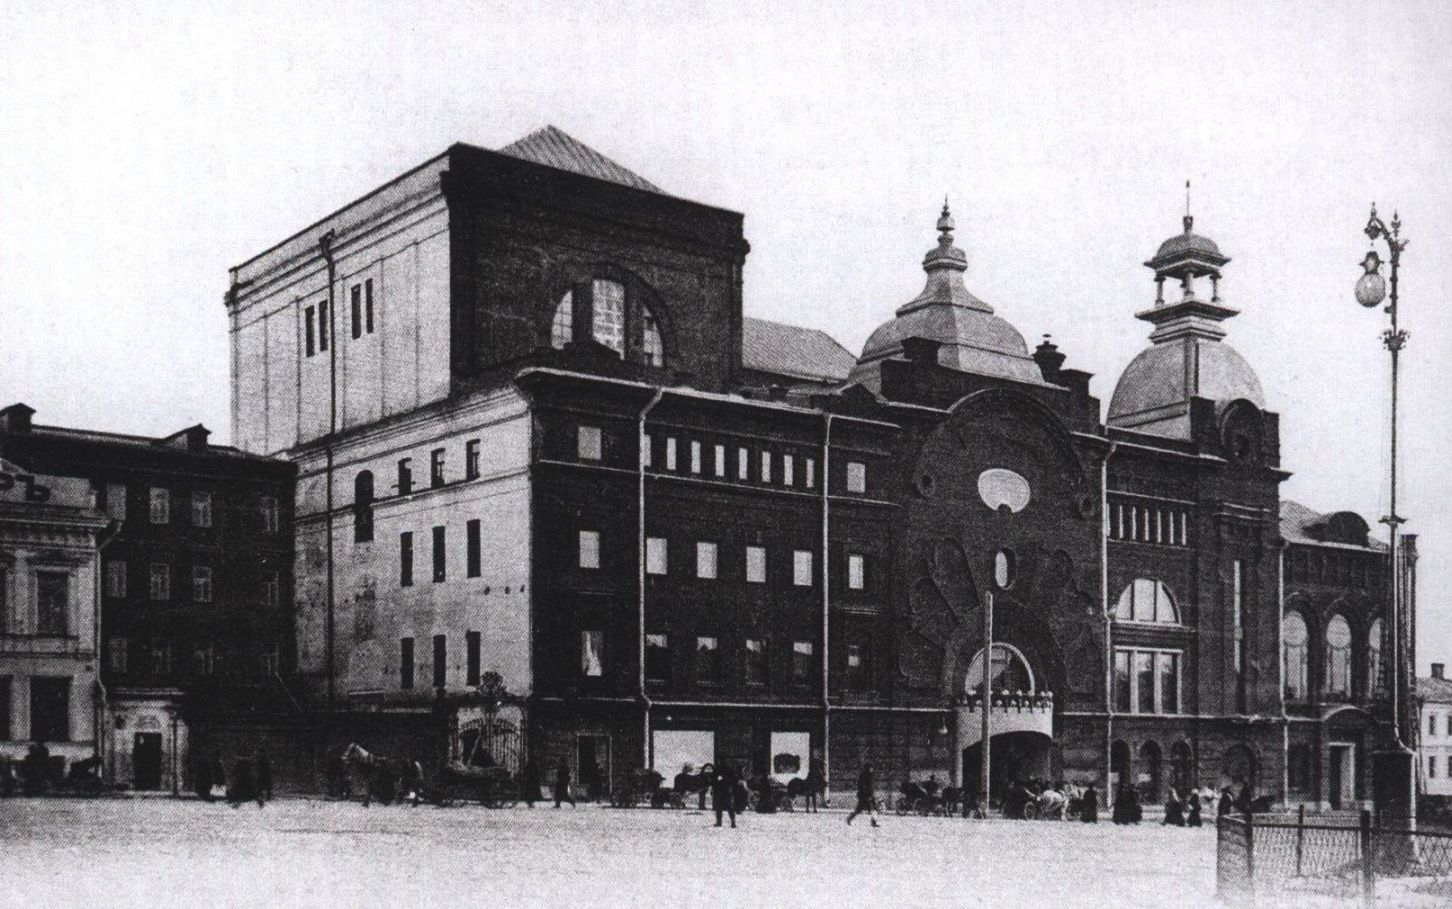 Триумфальная площадь. 1900-е гг. В 1922 году Театру имени Мейерхольда (ТИМу) передали здание театра «Буфф-миниатюр» французского антрепренера Омона, находившегося здесь с 1901 года. В 1930-х годах Мейерхольд начал перестраивать здание, но после его ареста стройку остановили